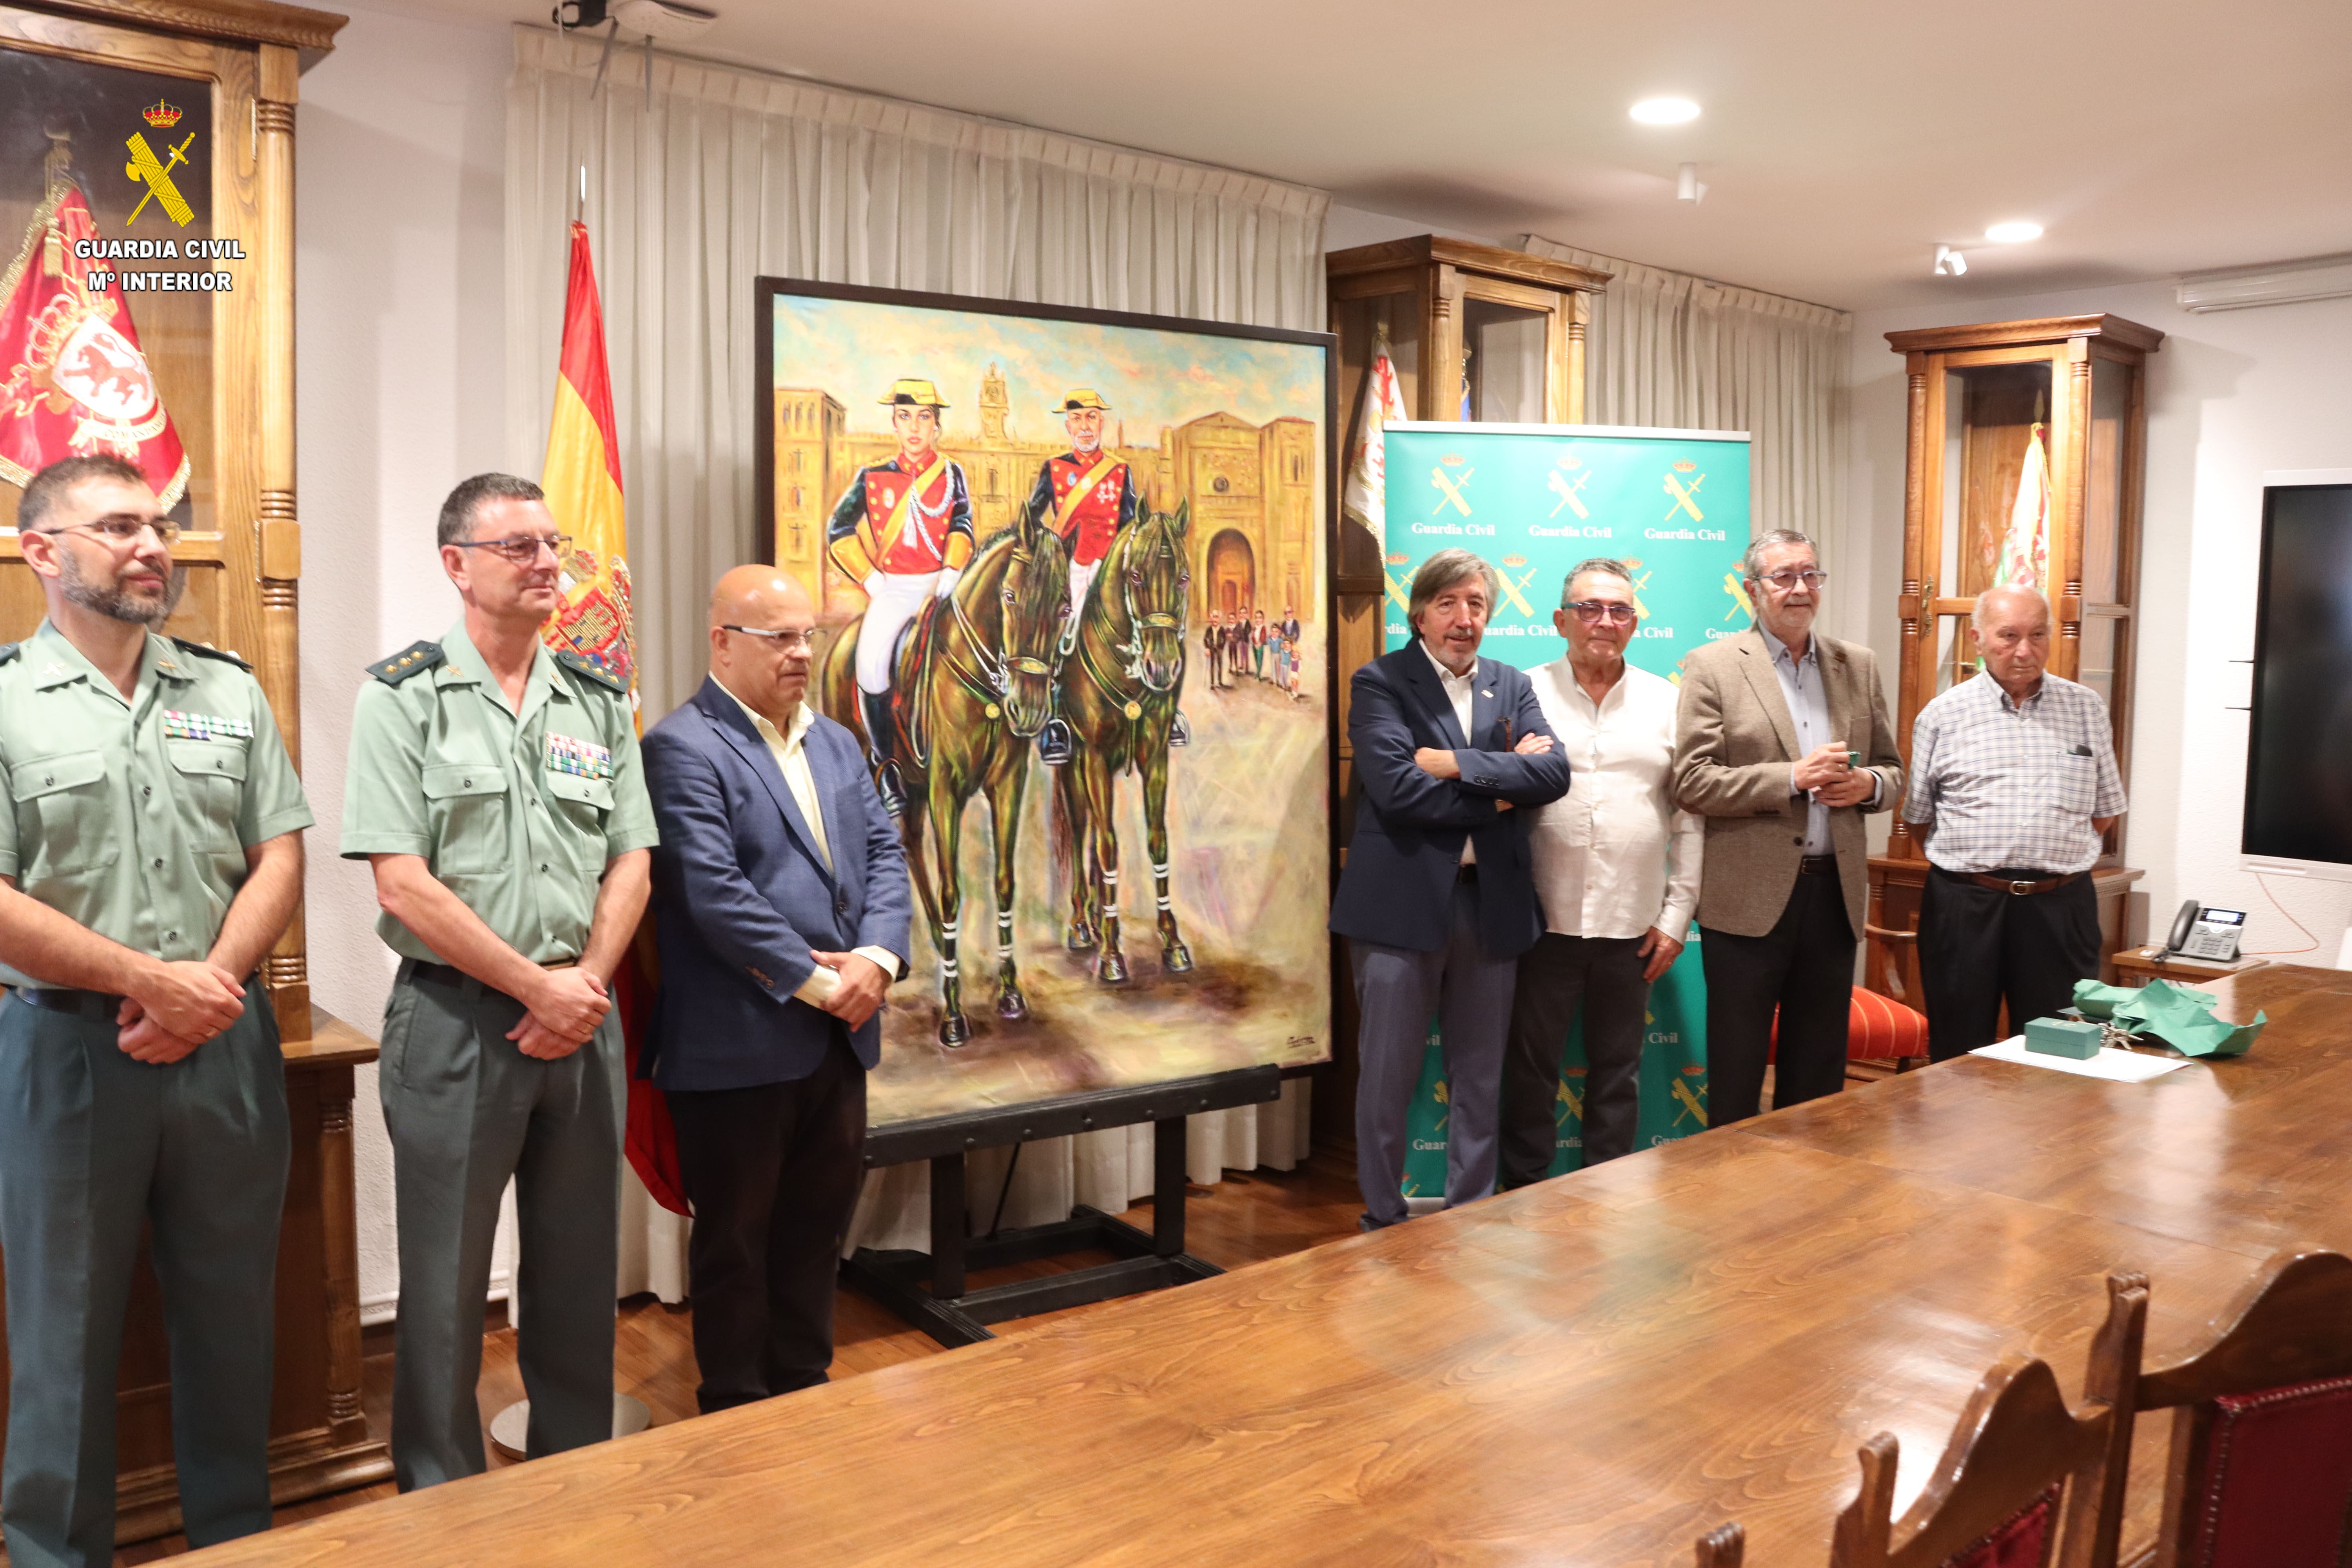 La Guardia Civil de León recibe un cuadro donado por la Junta Vecinal de San Cibrián de Ardón. | GUARDIA CIVIL